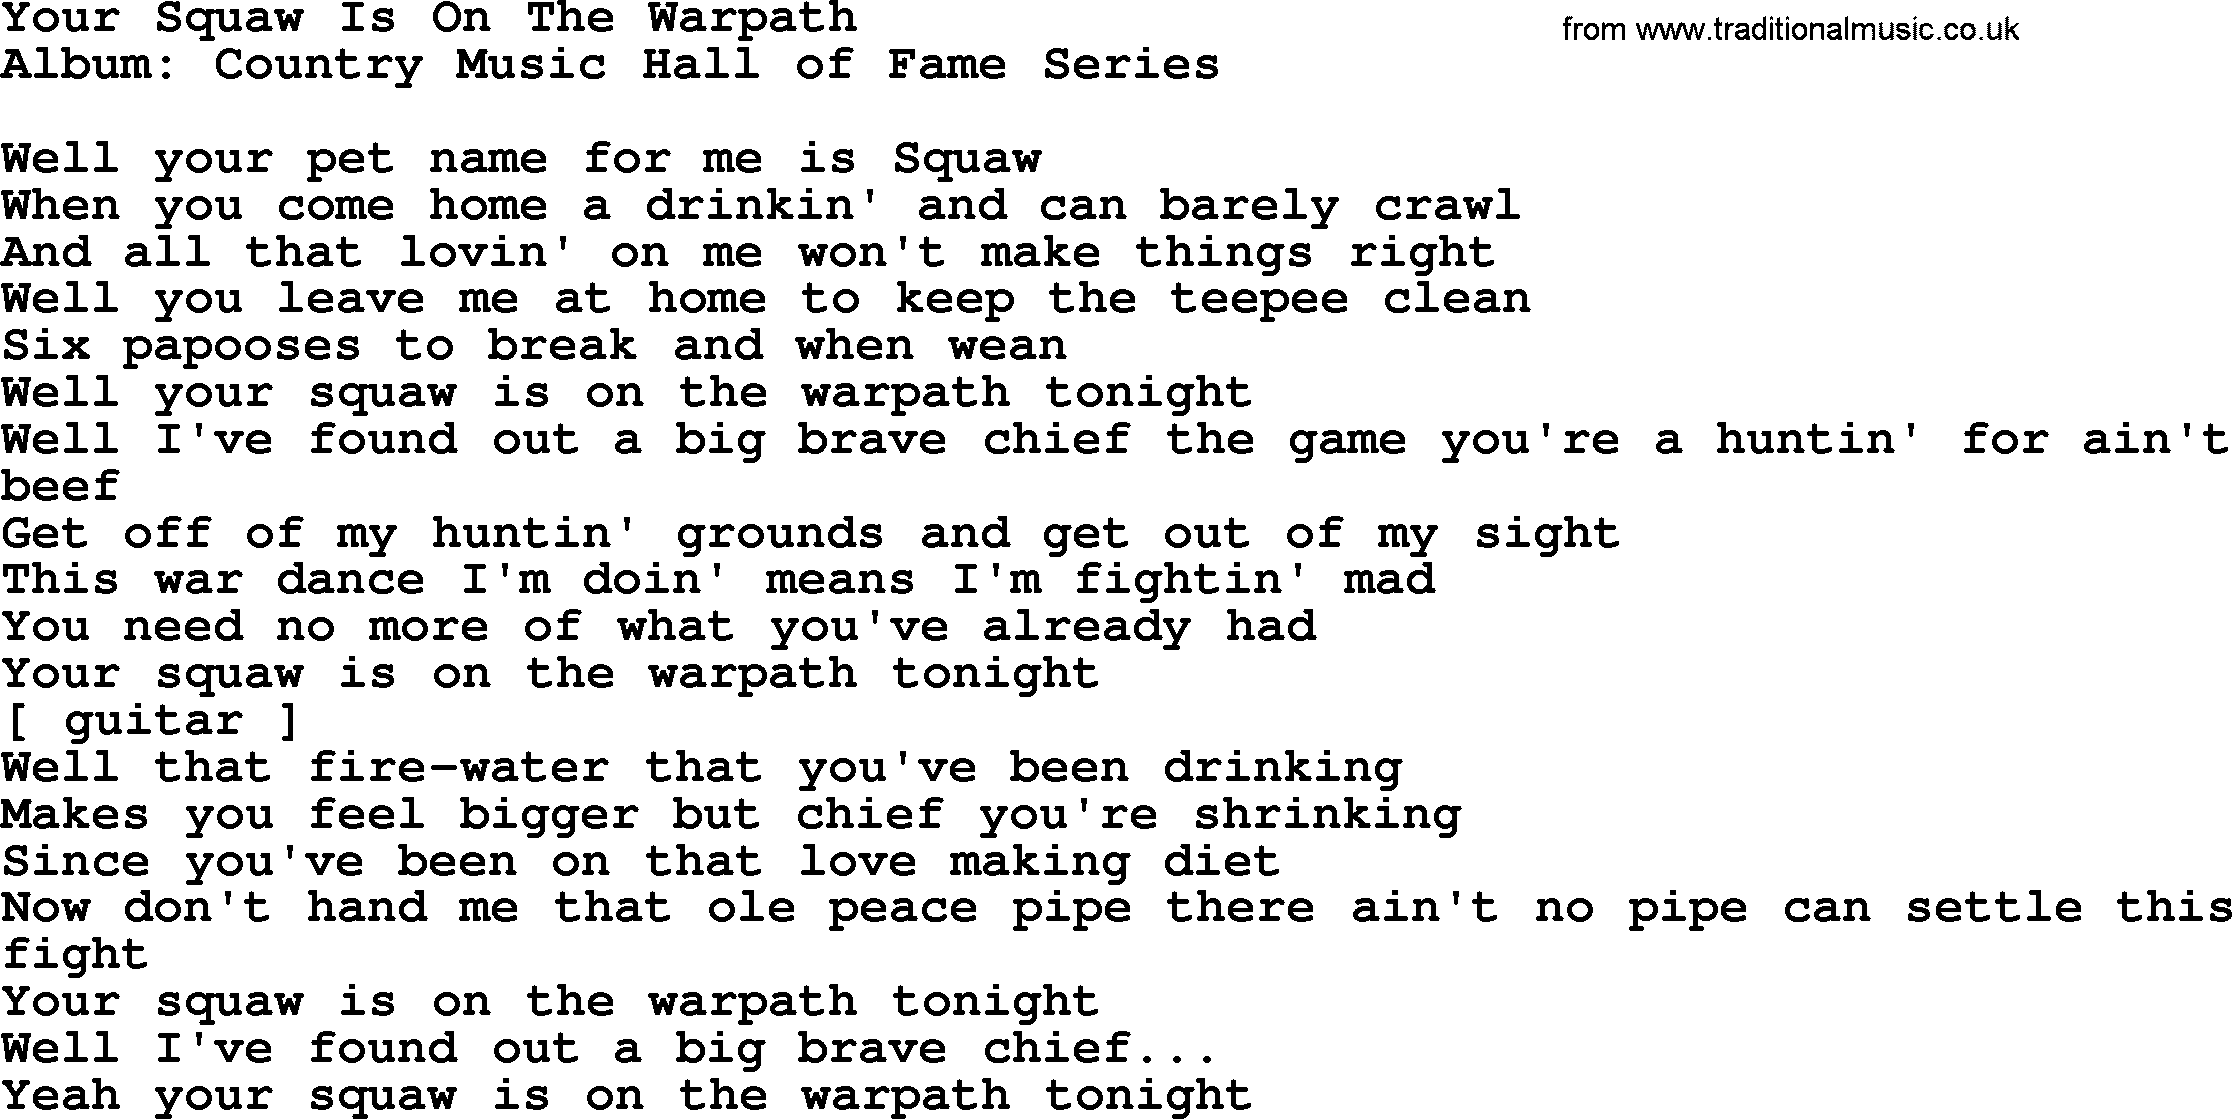 Loretta Lynn song: Your Squaw Is On The Warpath lyrics